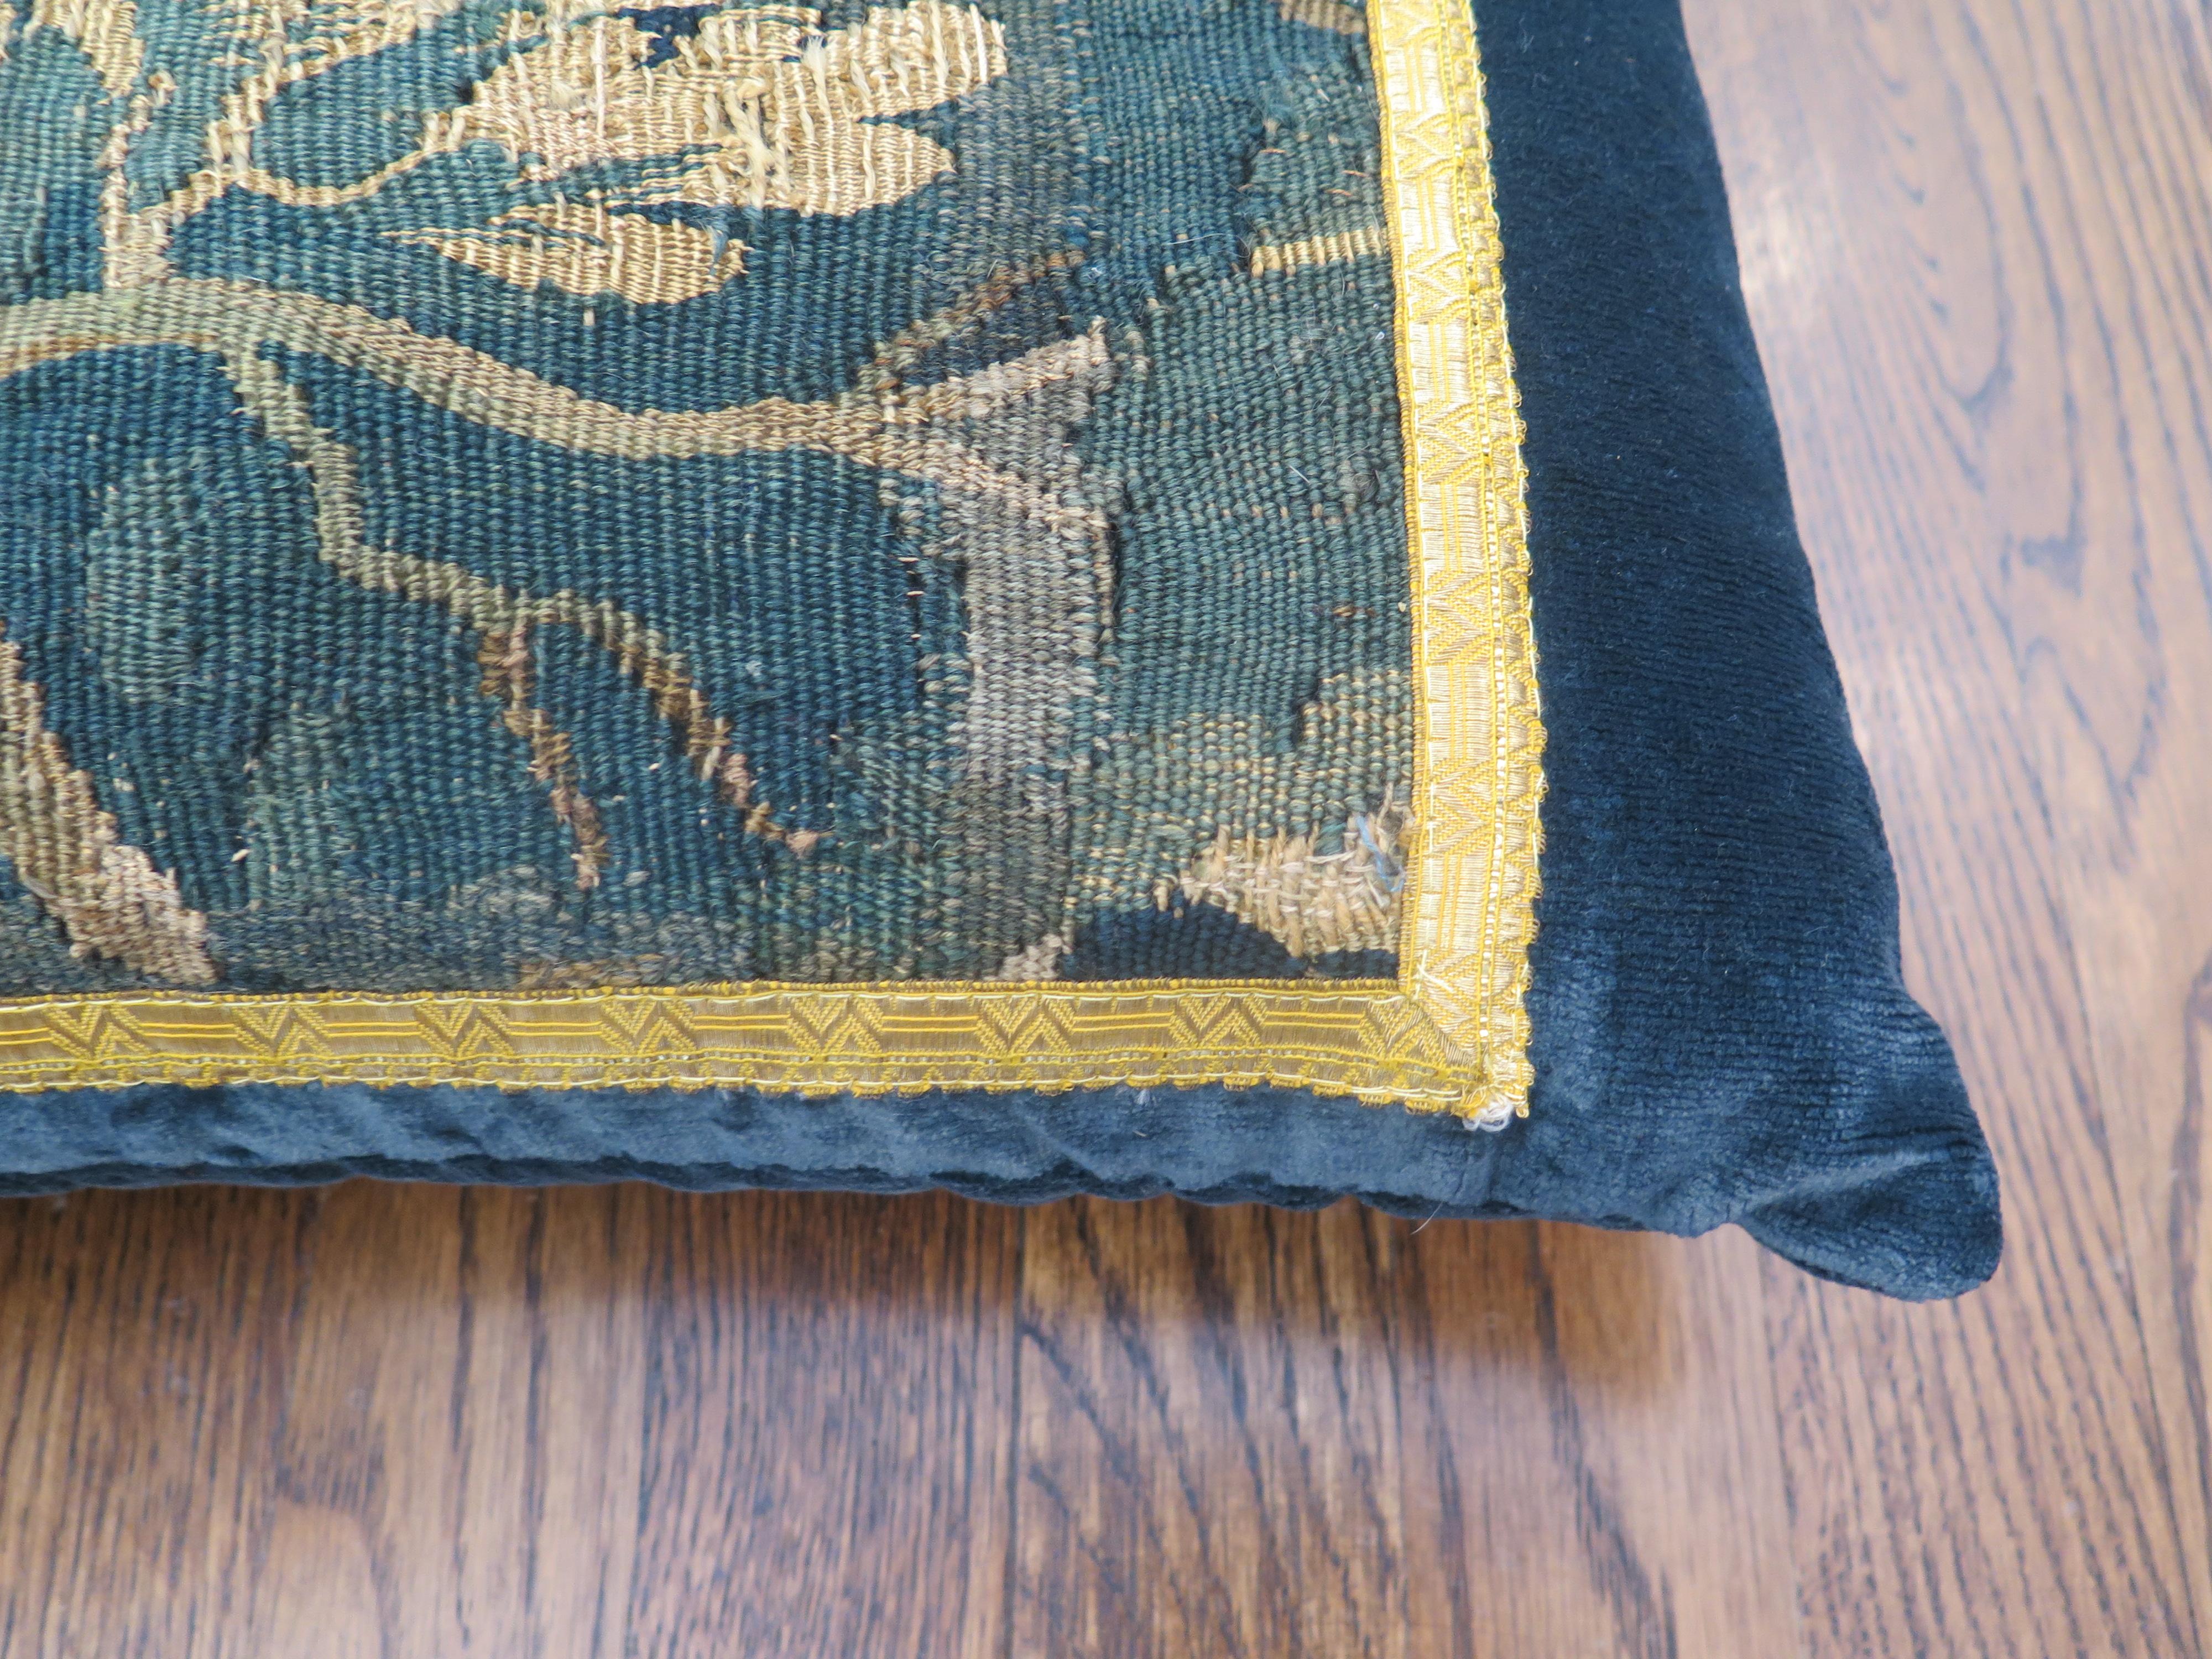 Custom 18th century verdure tapestry pillow in marine blue linen velvet and gold metallic trim. Down filled.